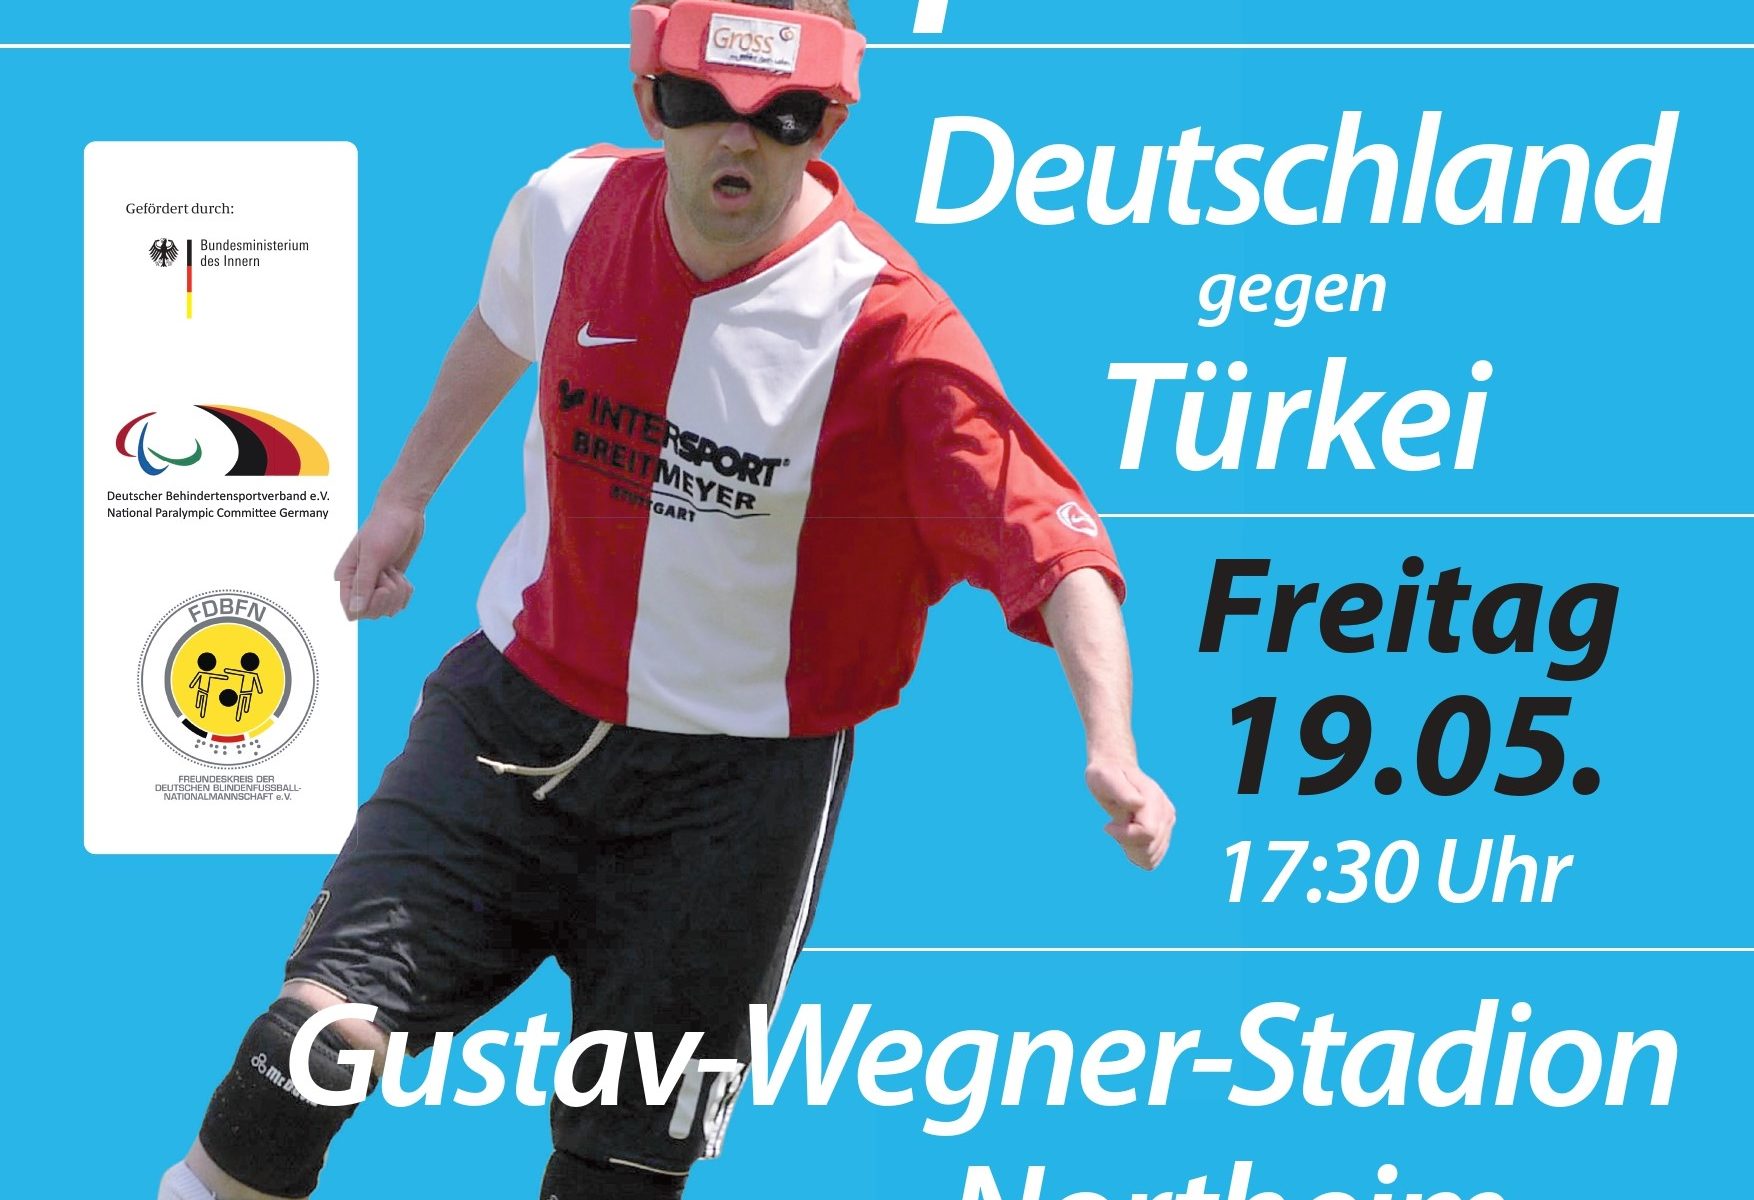 Ein Flyer weist auf das Testspiel der Nationalmannschaft in Northeim hin. Rechte: Deutsche Blindenfußball-Nationalmannschaft.